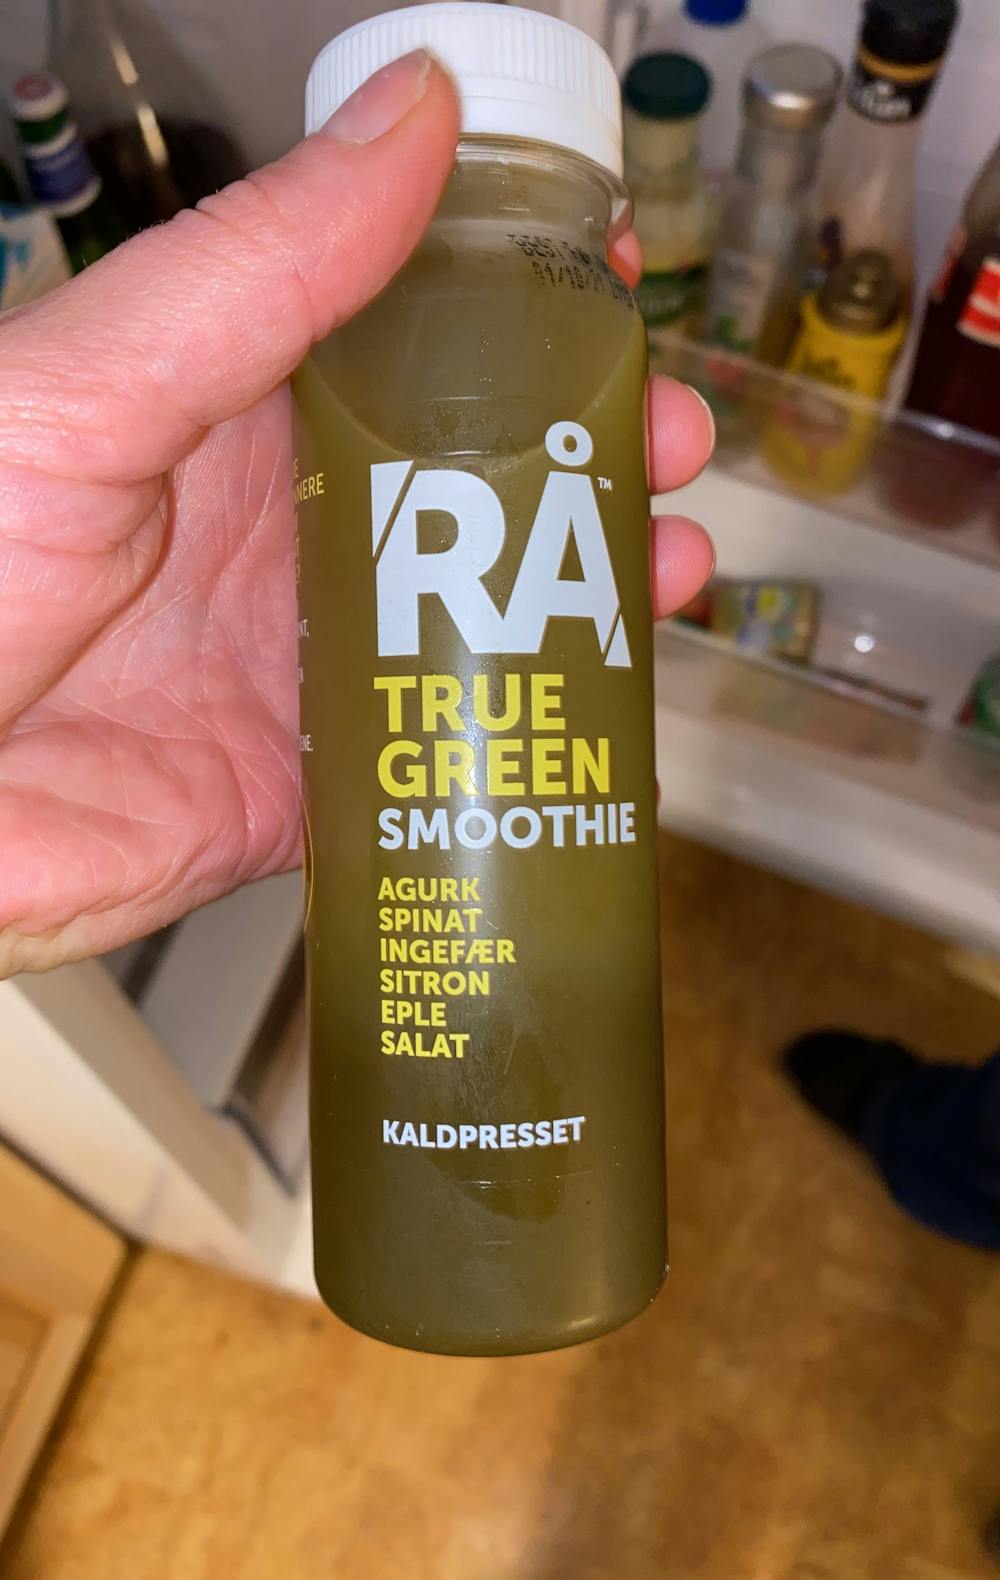 True green smoothie, RÅ